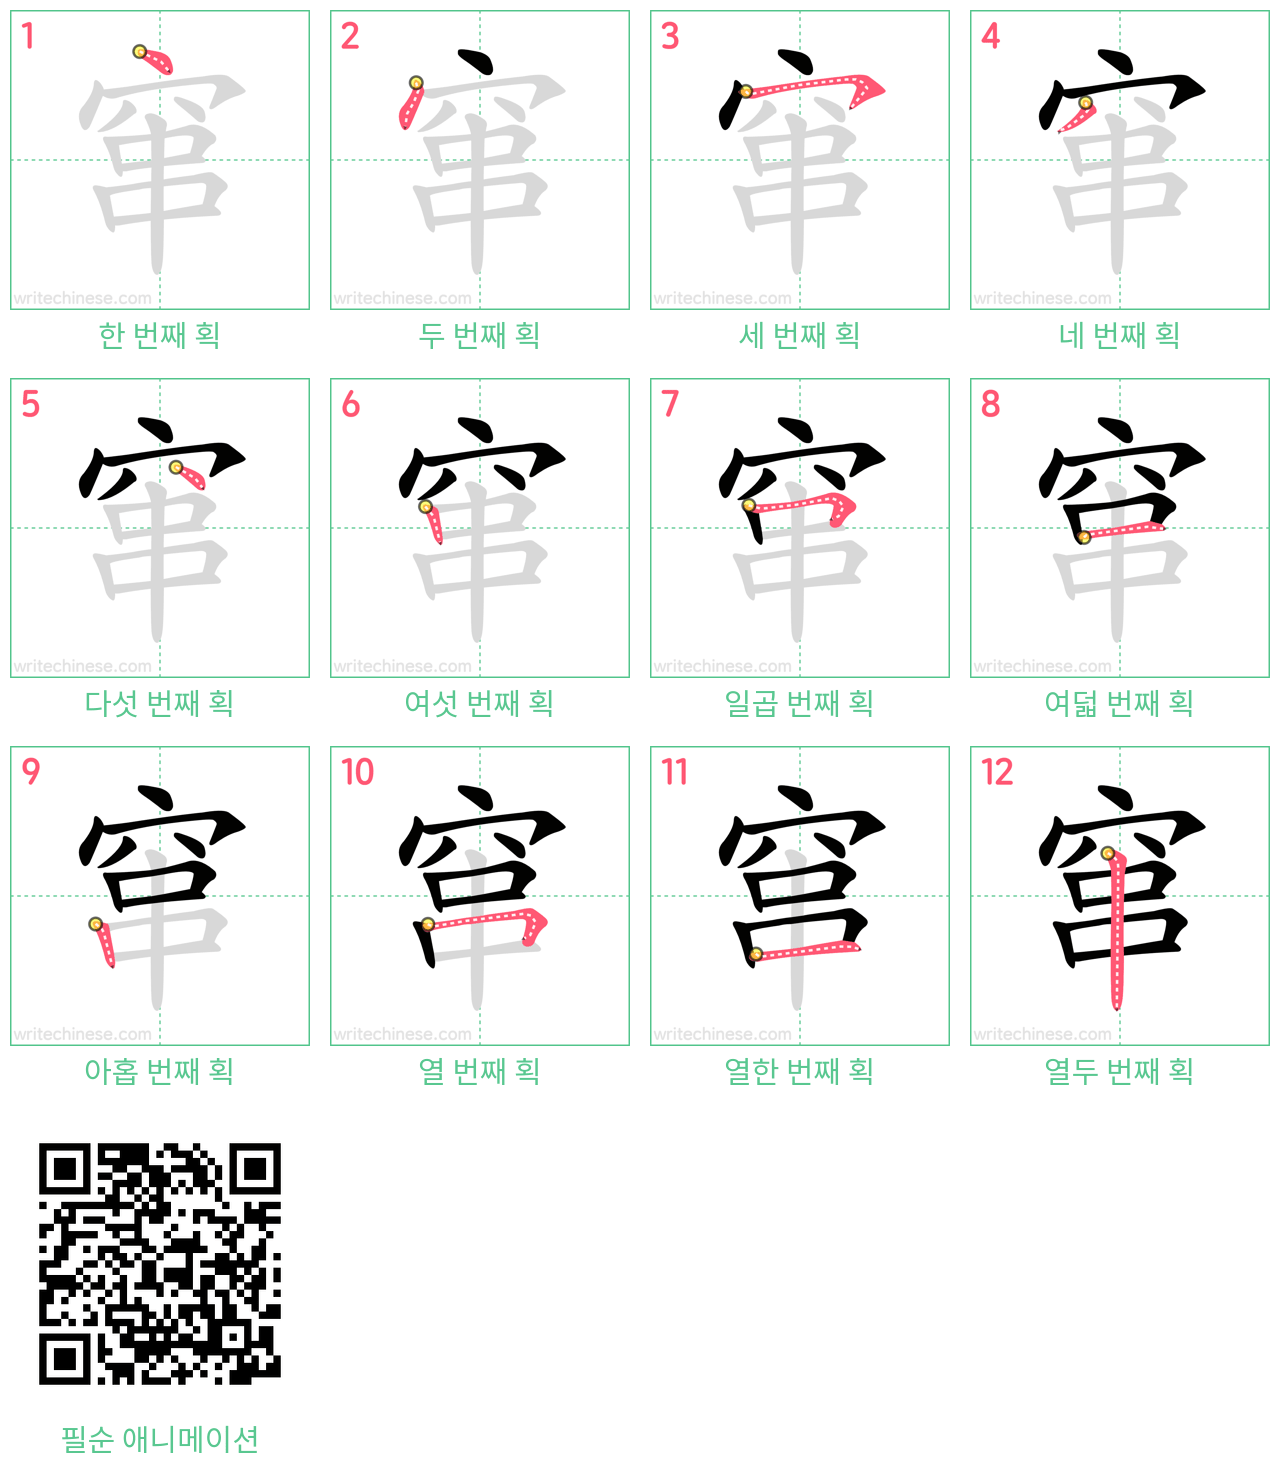 窜 step-by-step stroke order diagrams